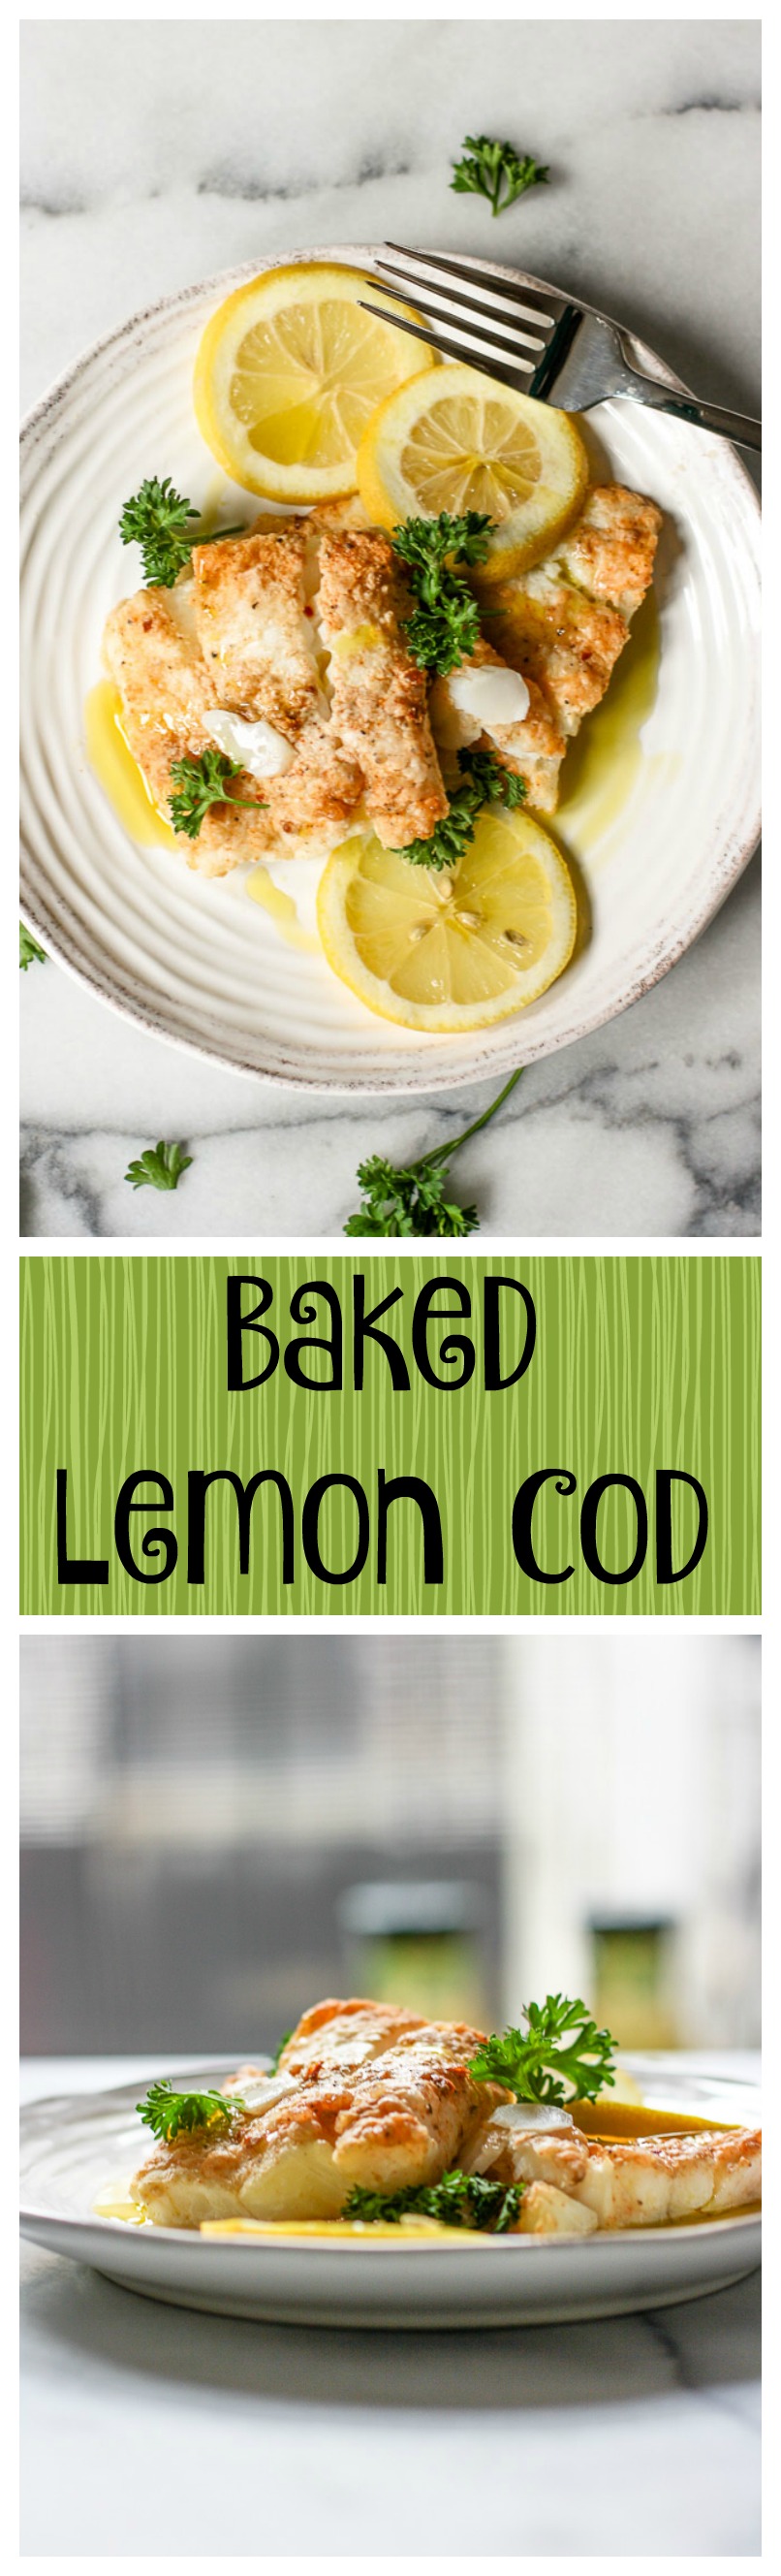 baked lemon cod